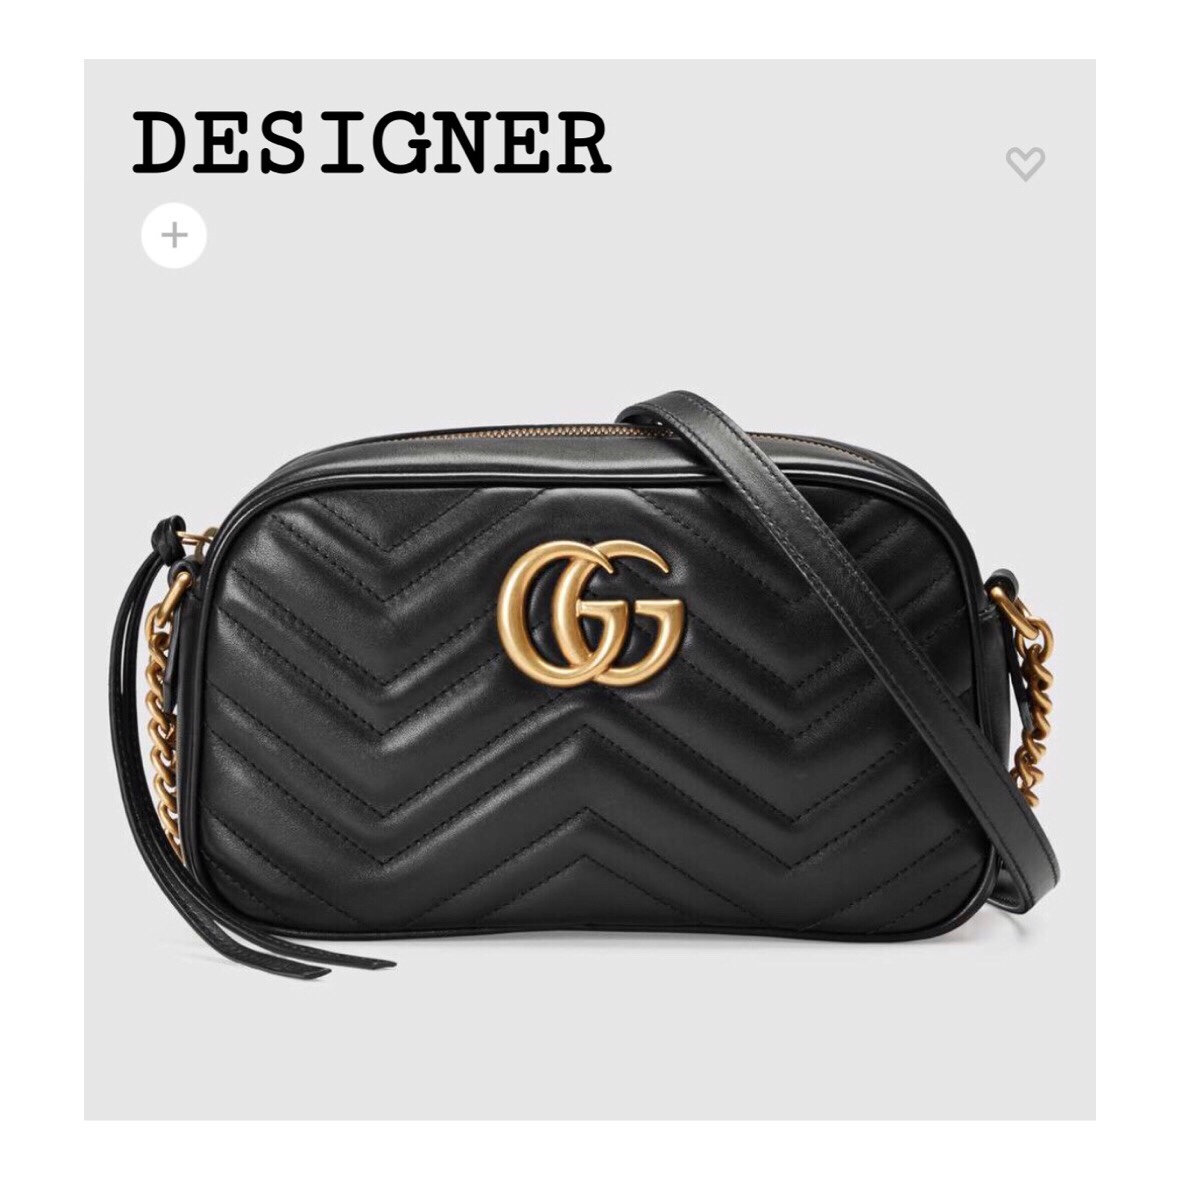 5 of the best Designer Handbag Dupes